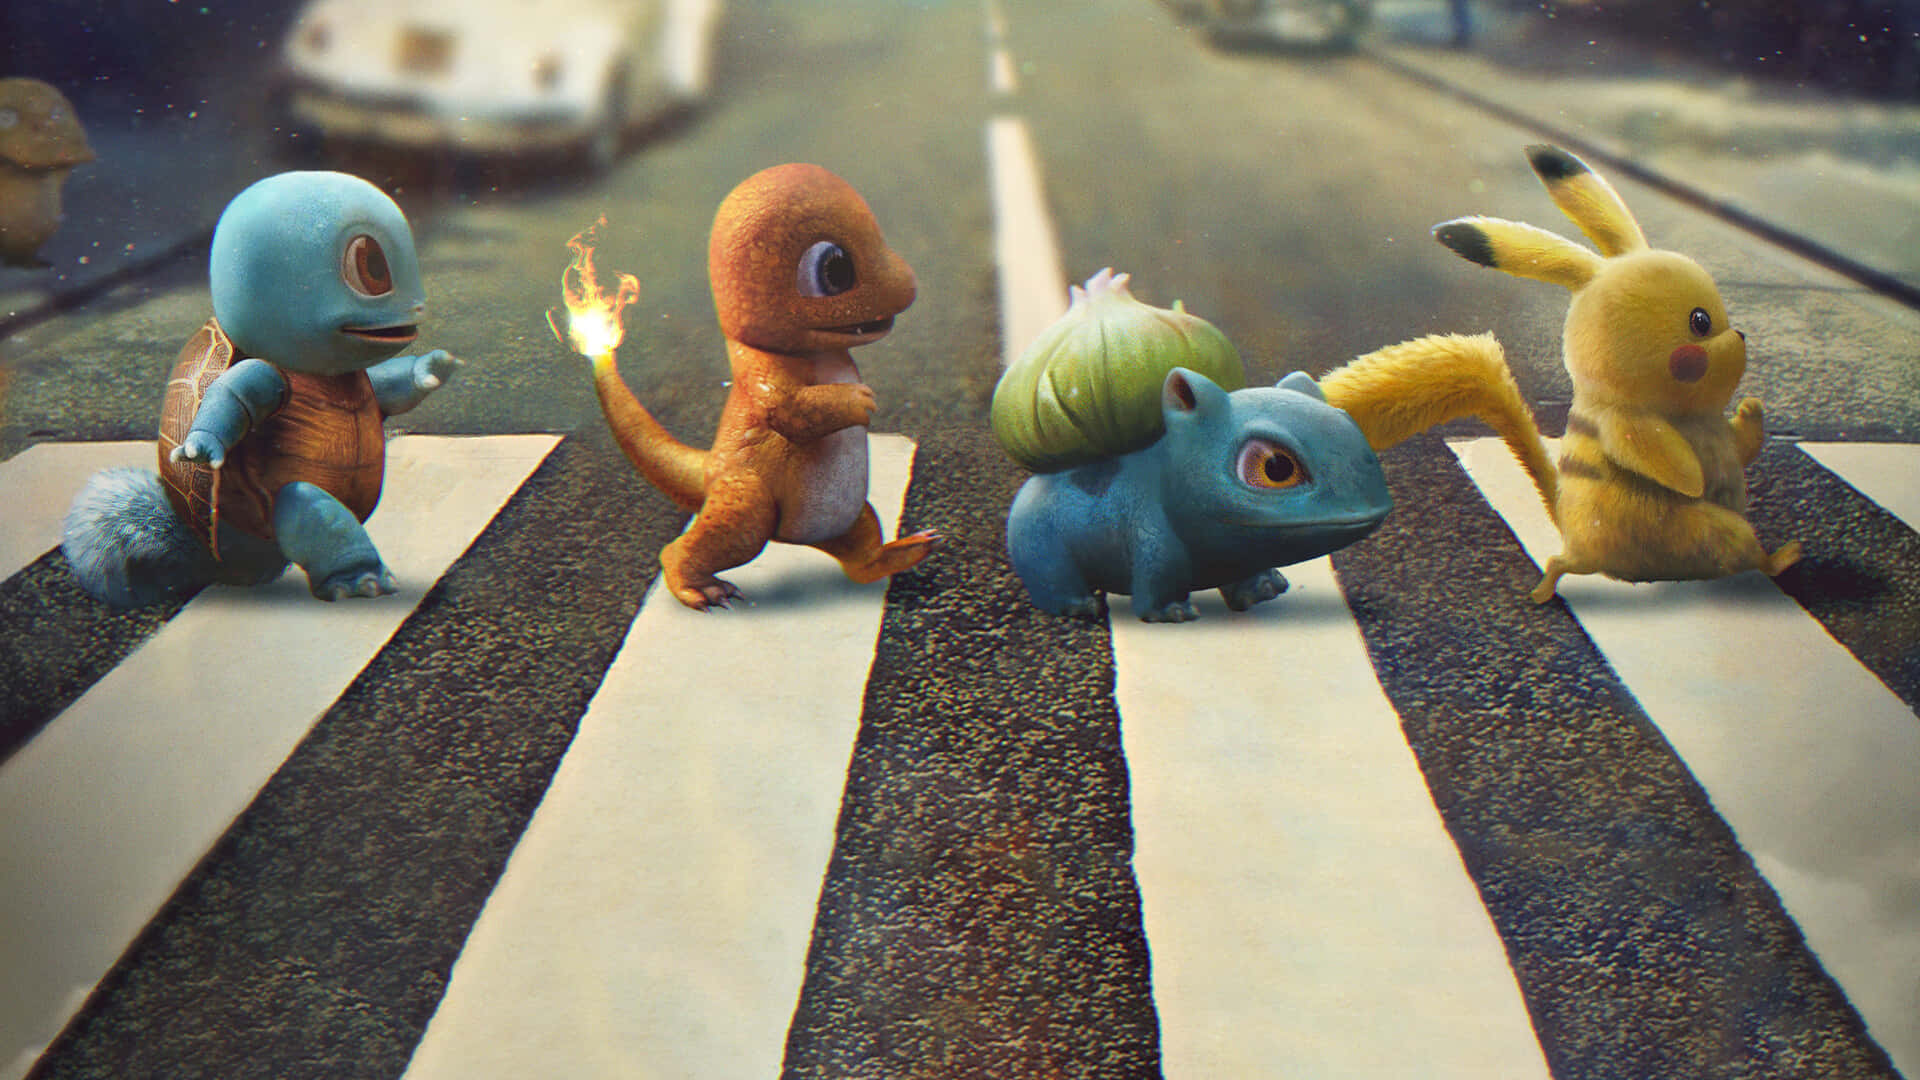 Hintergrundbildmit Pikachu, Bulbasaur, Charmander Und Squirtle Pokemon